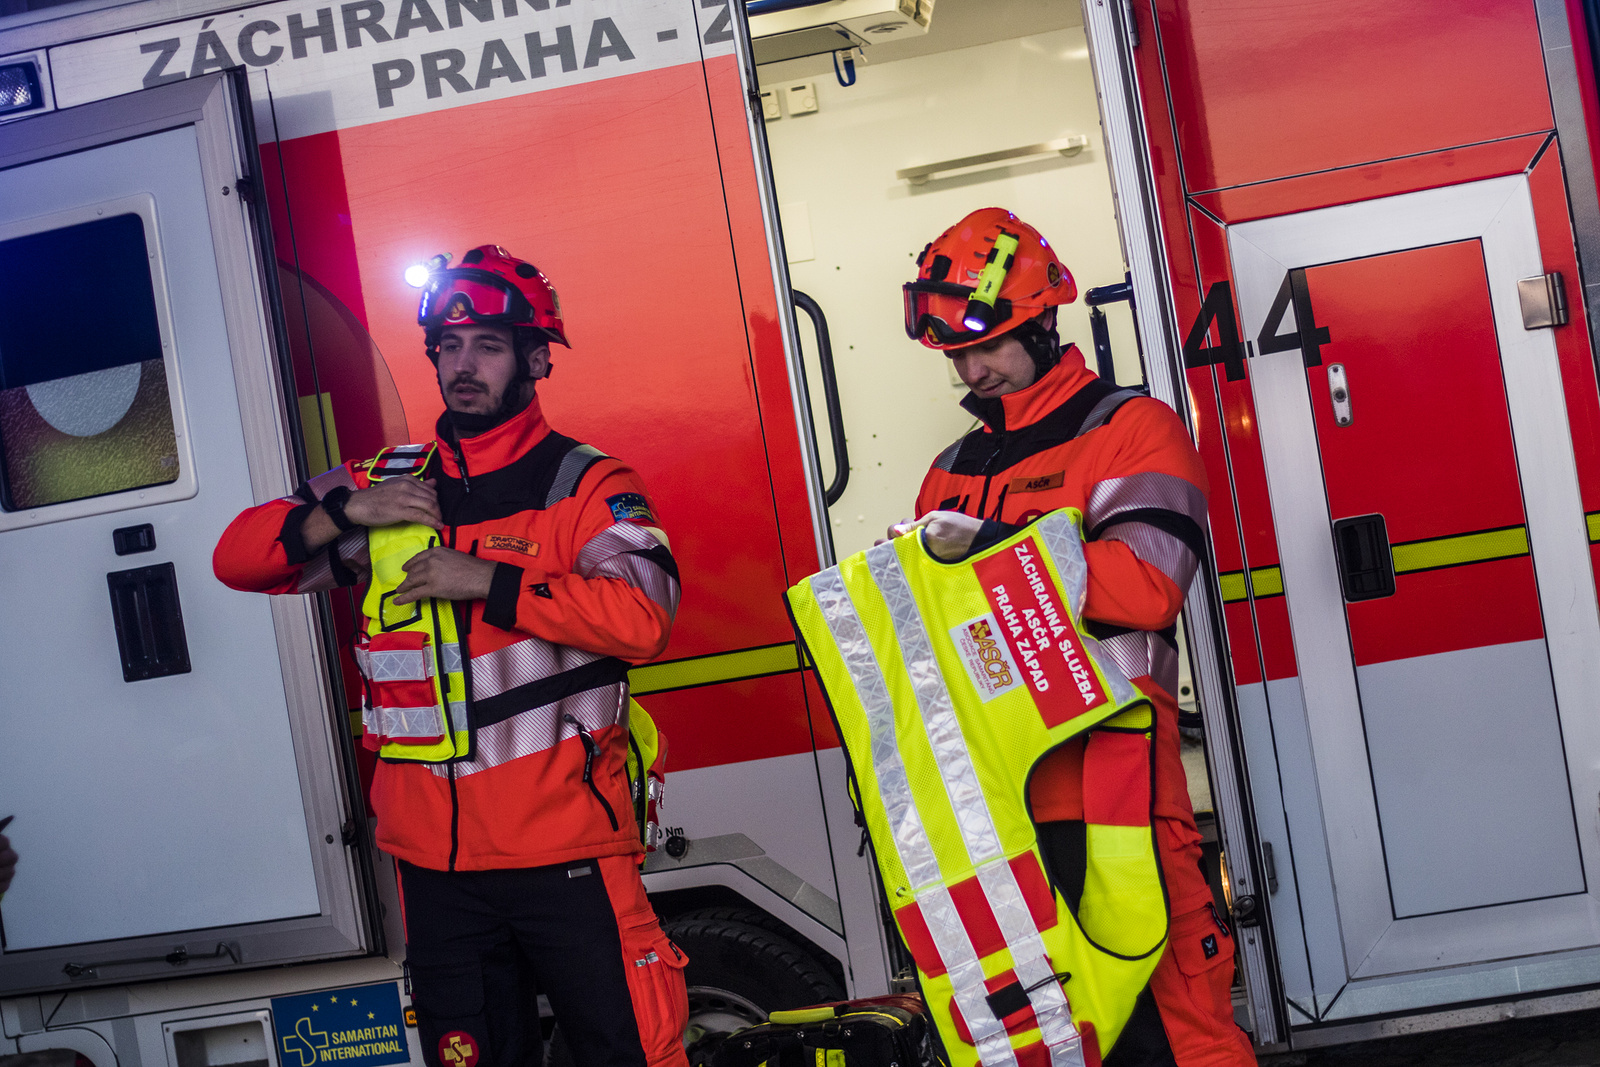 PODÍVEJTE SE: Vesty, které samy svítí. Záchranáři dostali nové oblečení -  Pražský deník